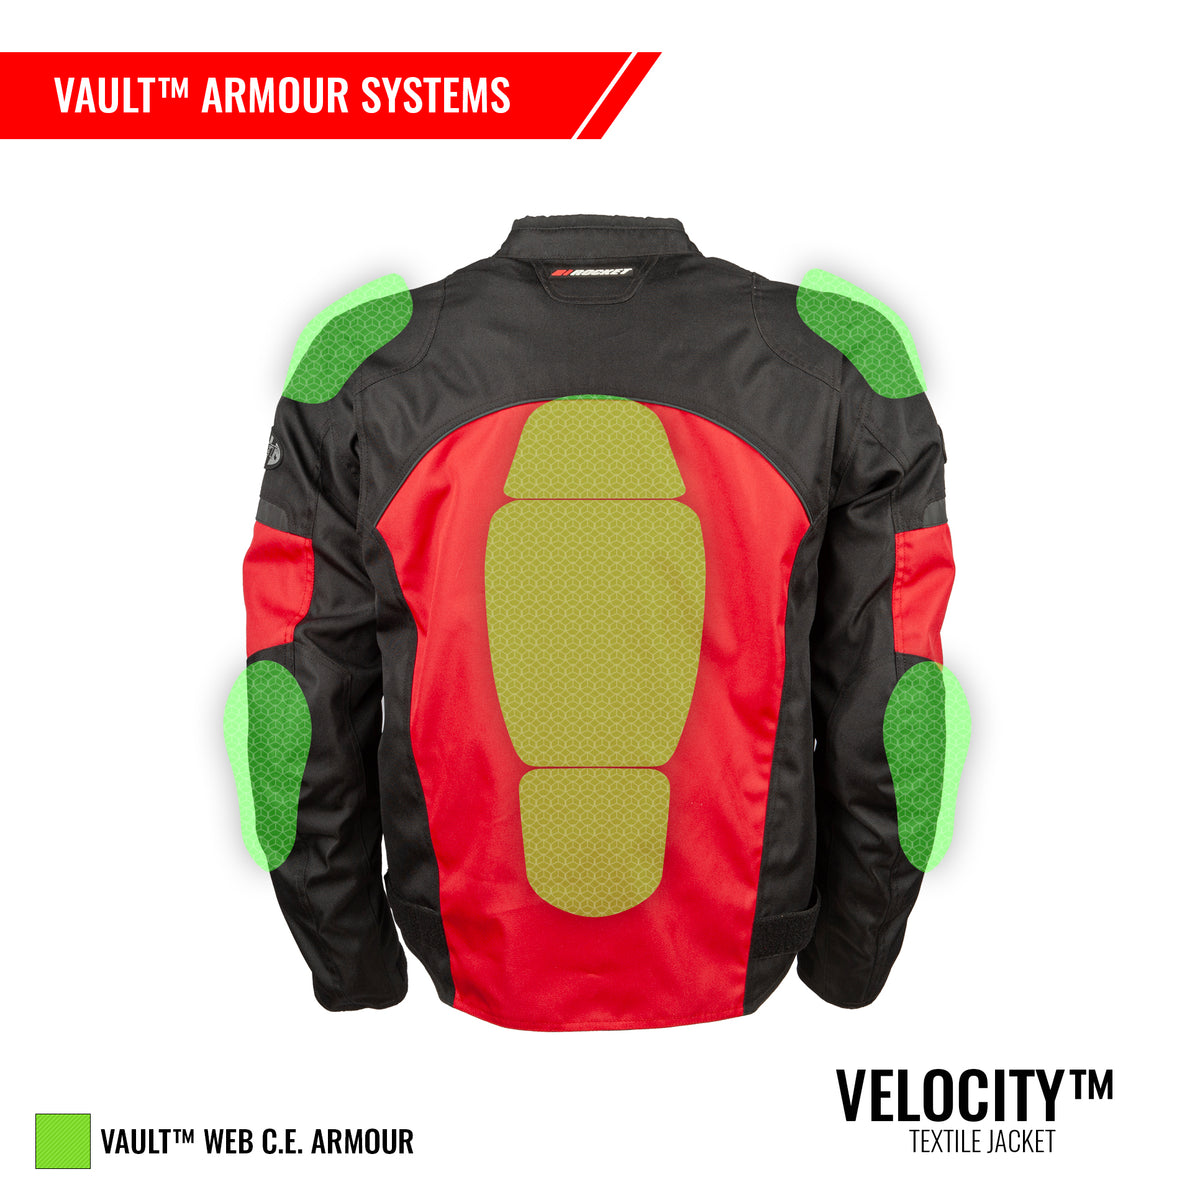 Velocity™ Textile Jacket